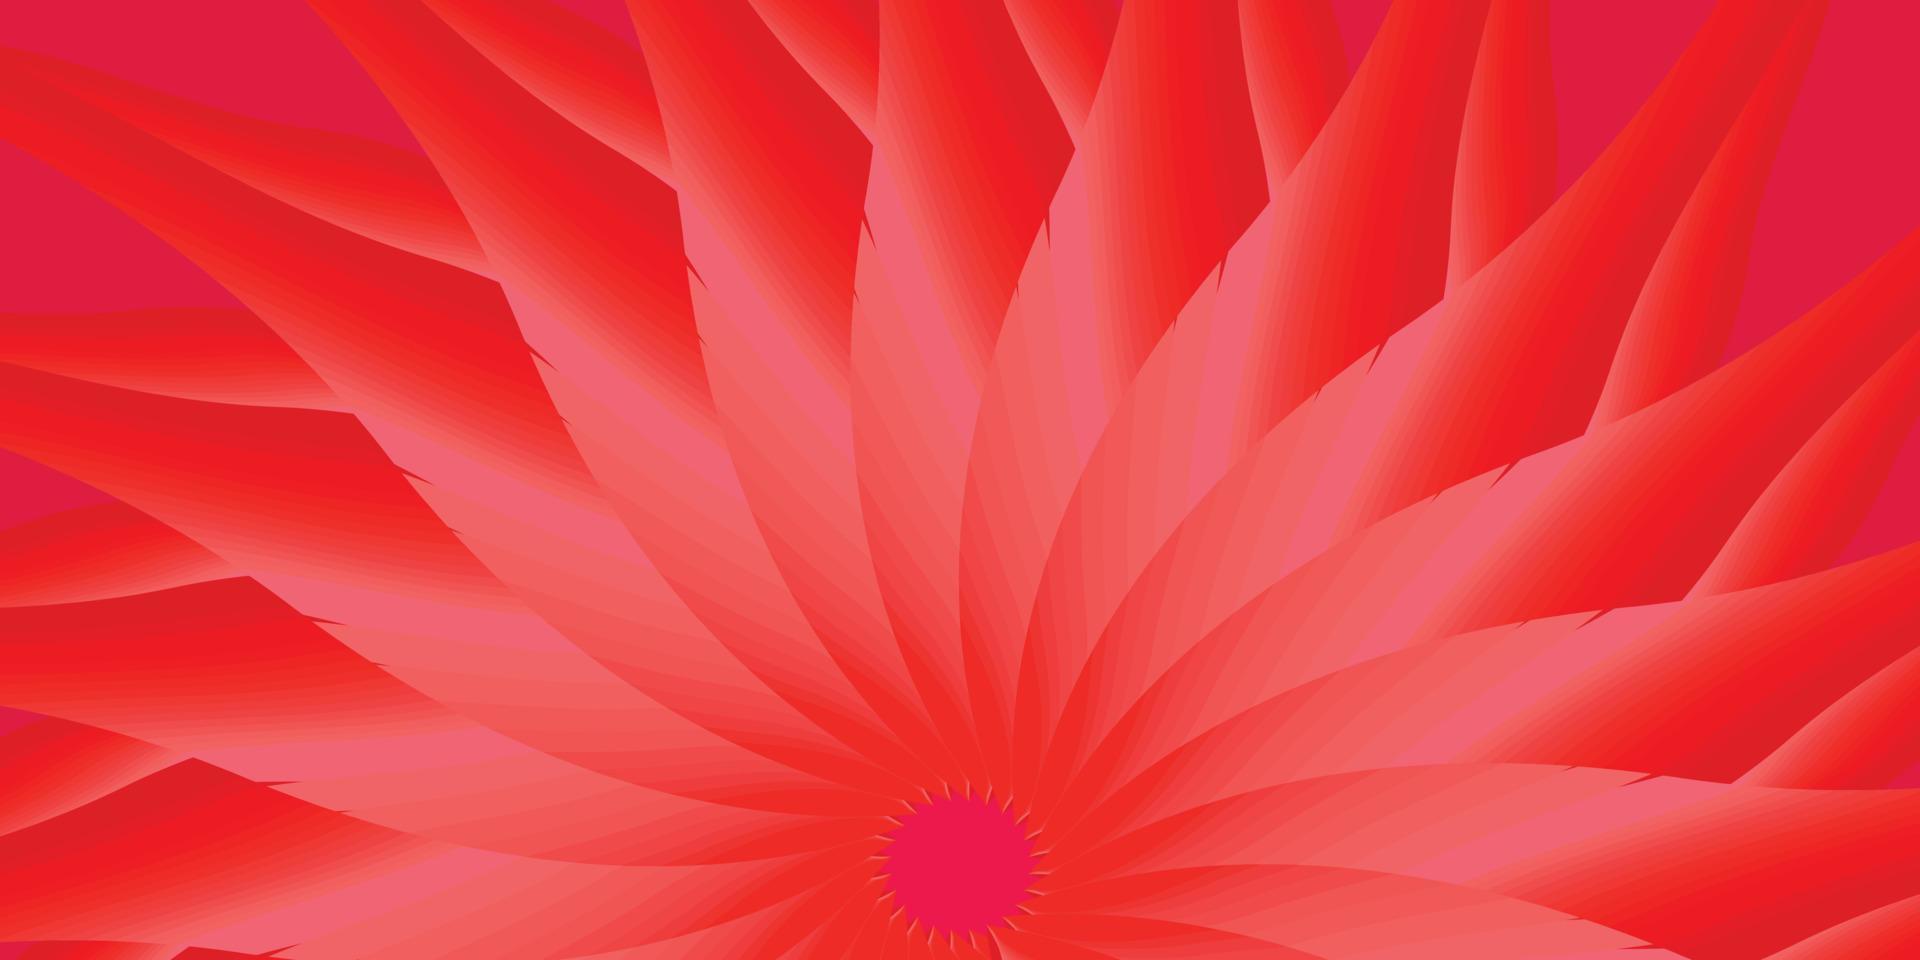 astratto sfondo rosso colore natura fiore floreale pianta fiore arte design carta da parati fondale modello stile moderno illustrazione vettoriale